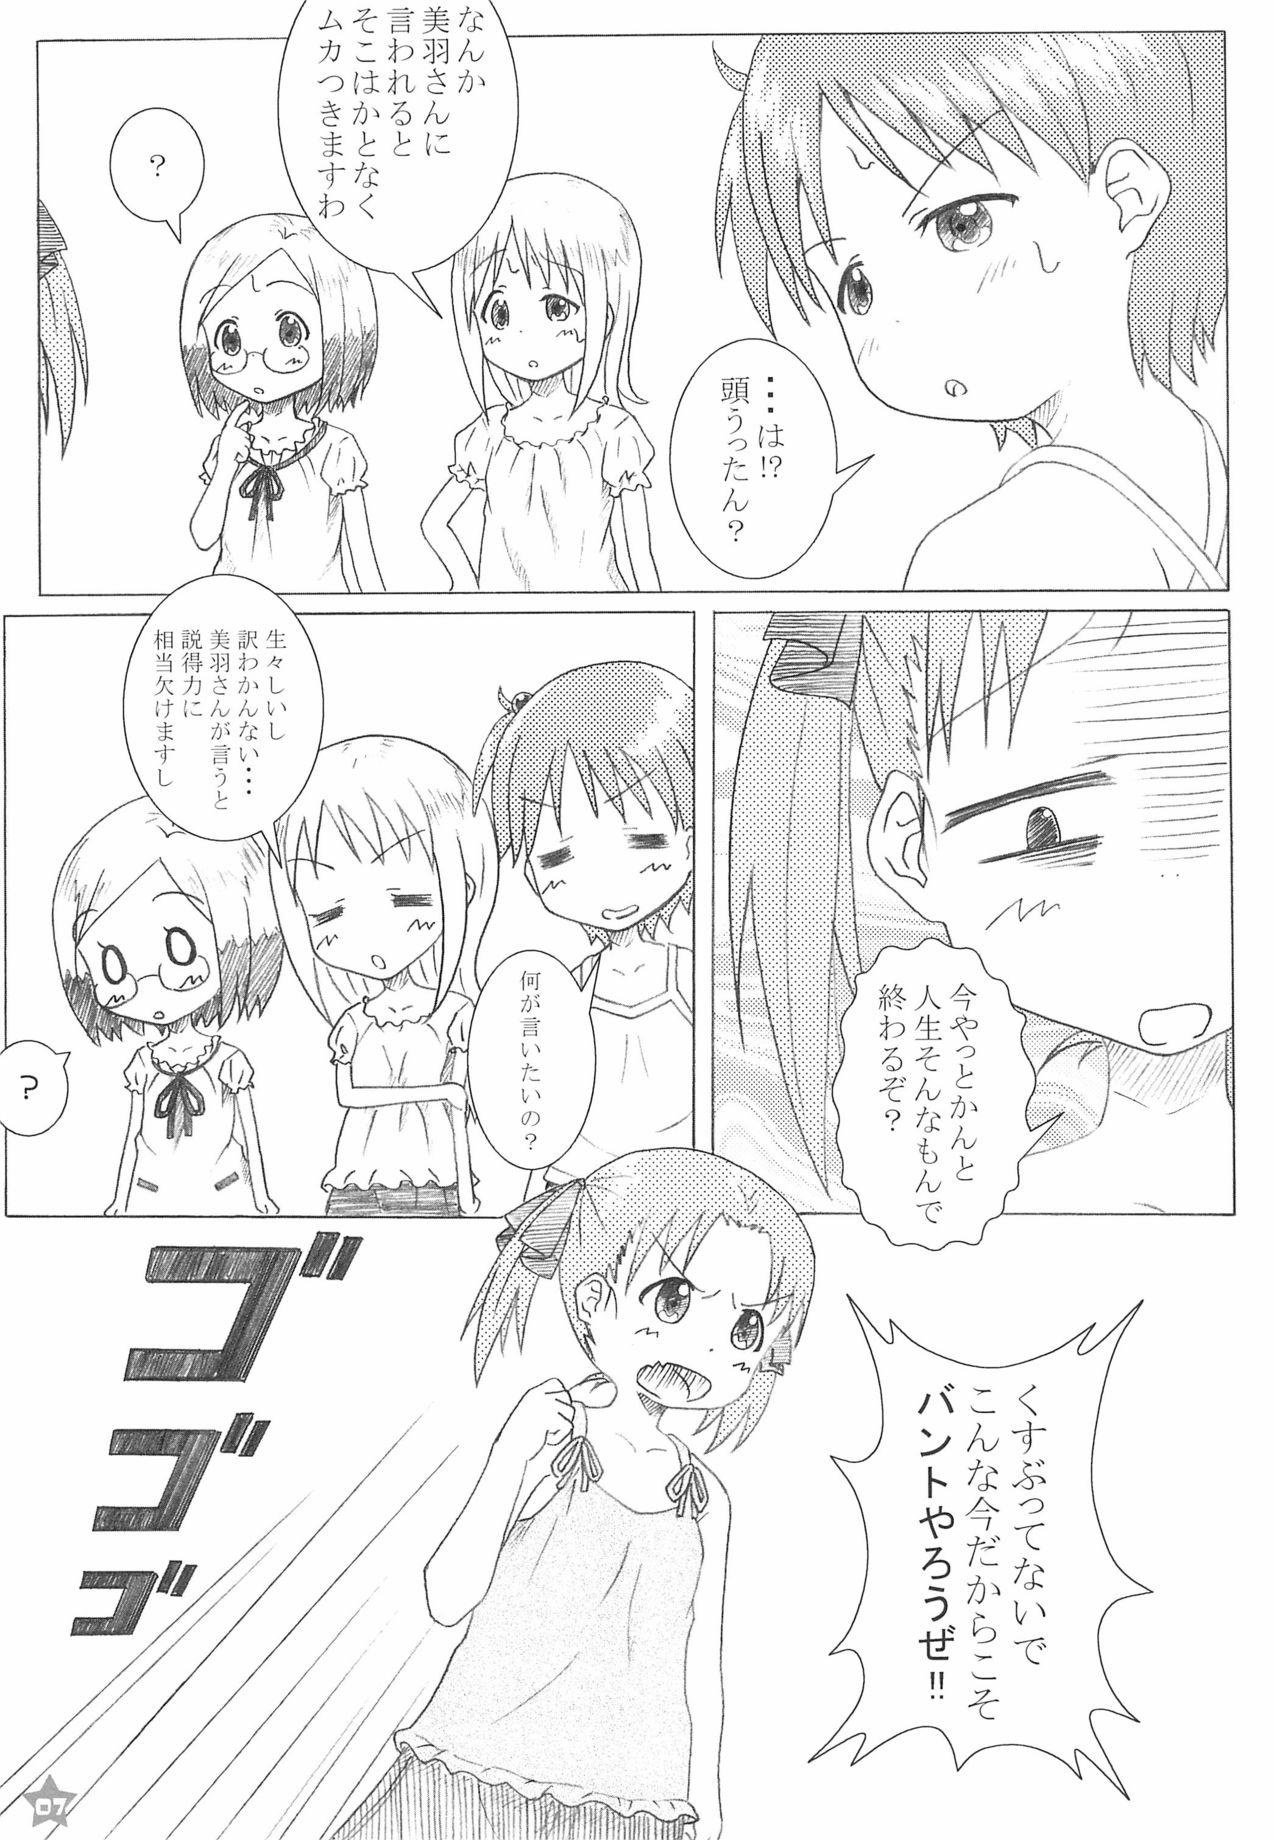 Girlongirl MASHIMARO☆69 - Ichigo mashimaro Mmd - Page 7